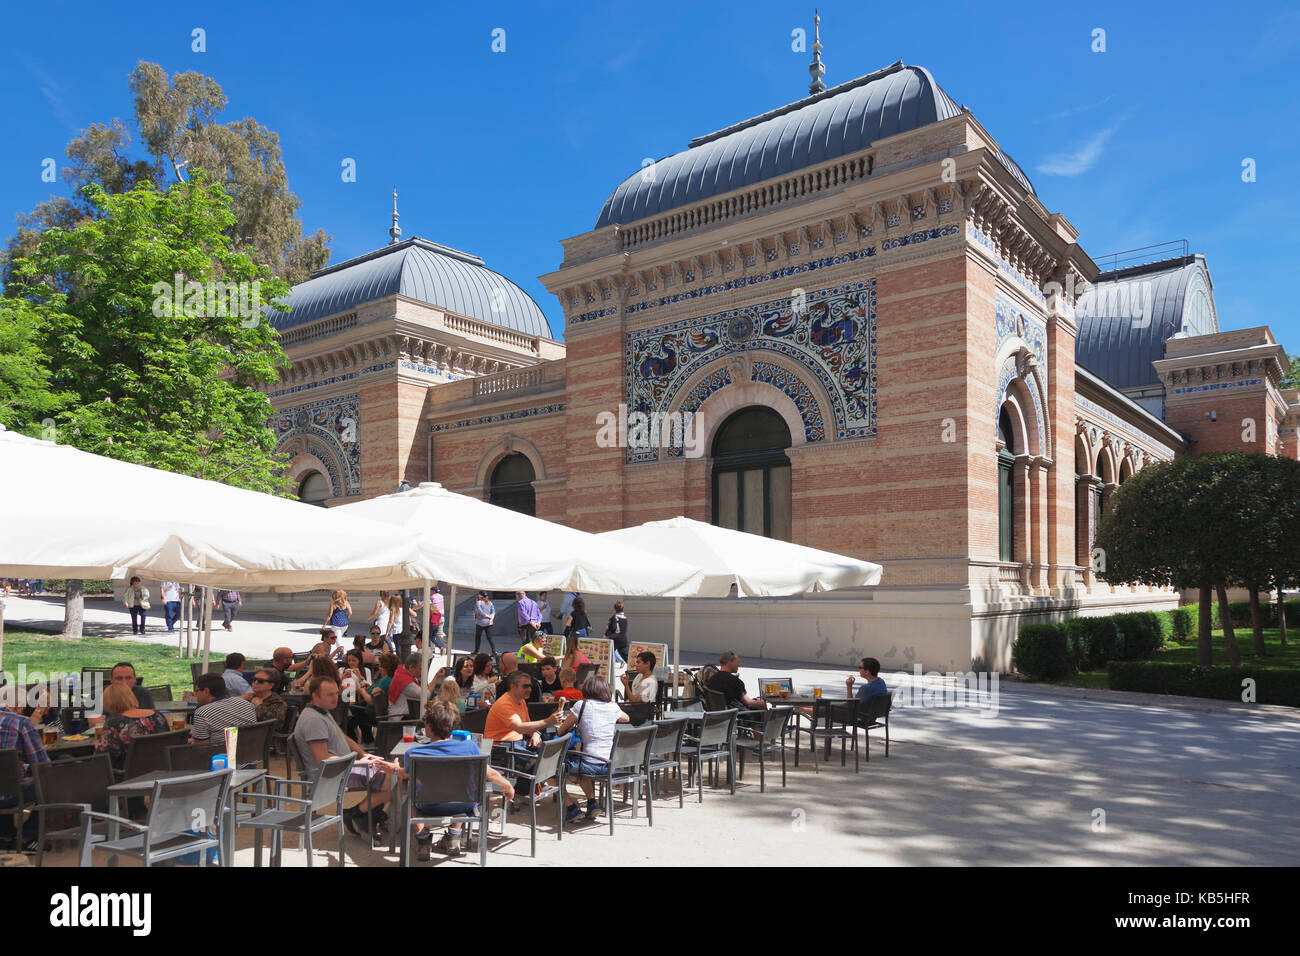 Cafe im Palacio de Velazques, Ausstellungsort für Reina Sofia Museum, Retiro Park, Parque del Buen Retiro, Madrid, Spanien Stockfoto